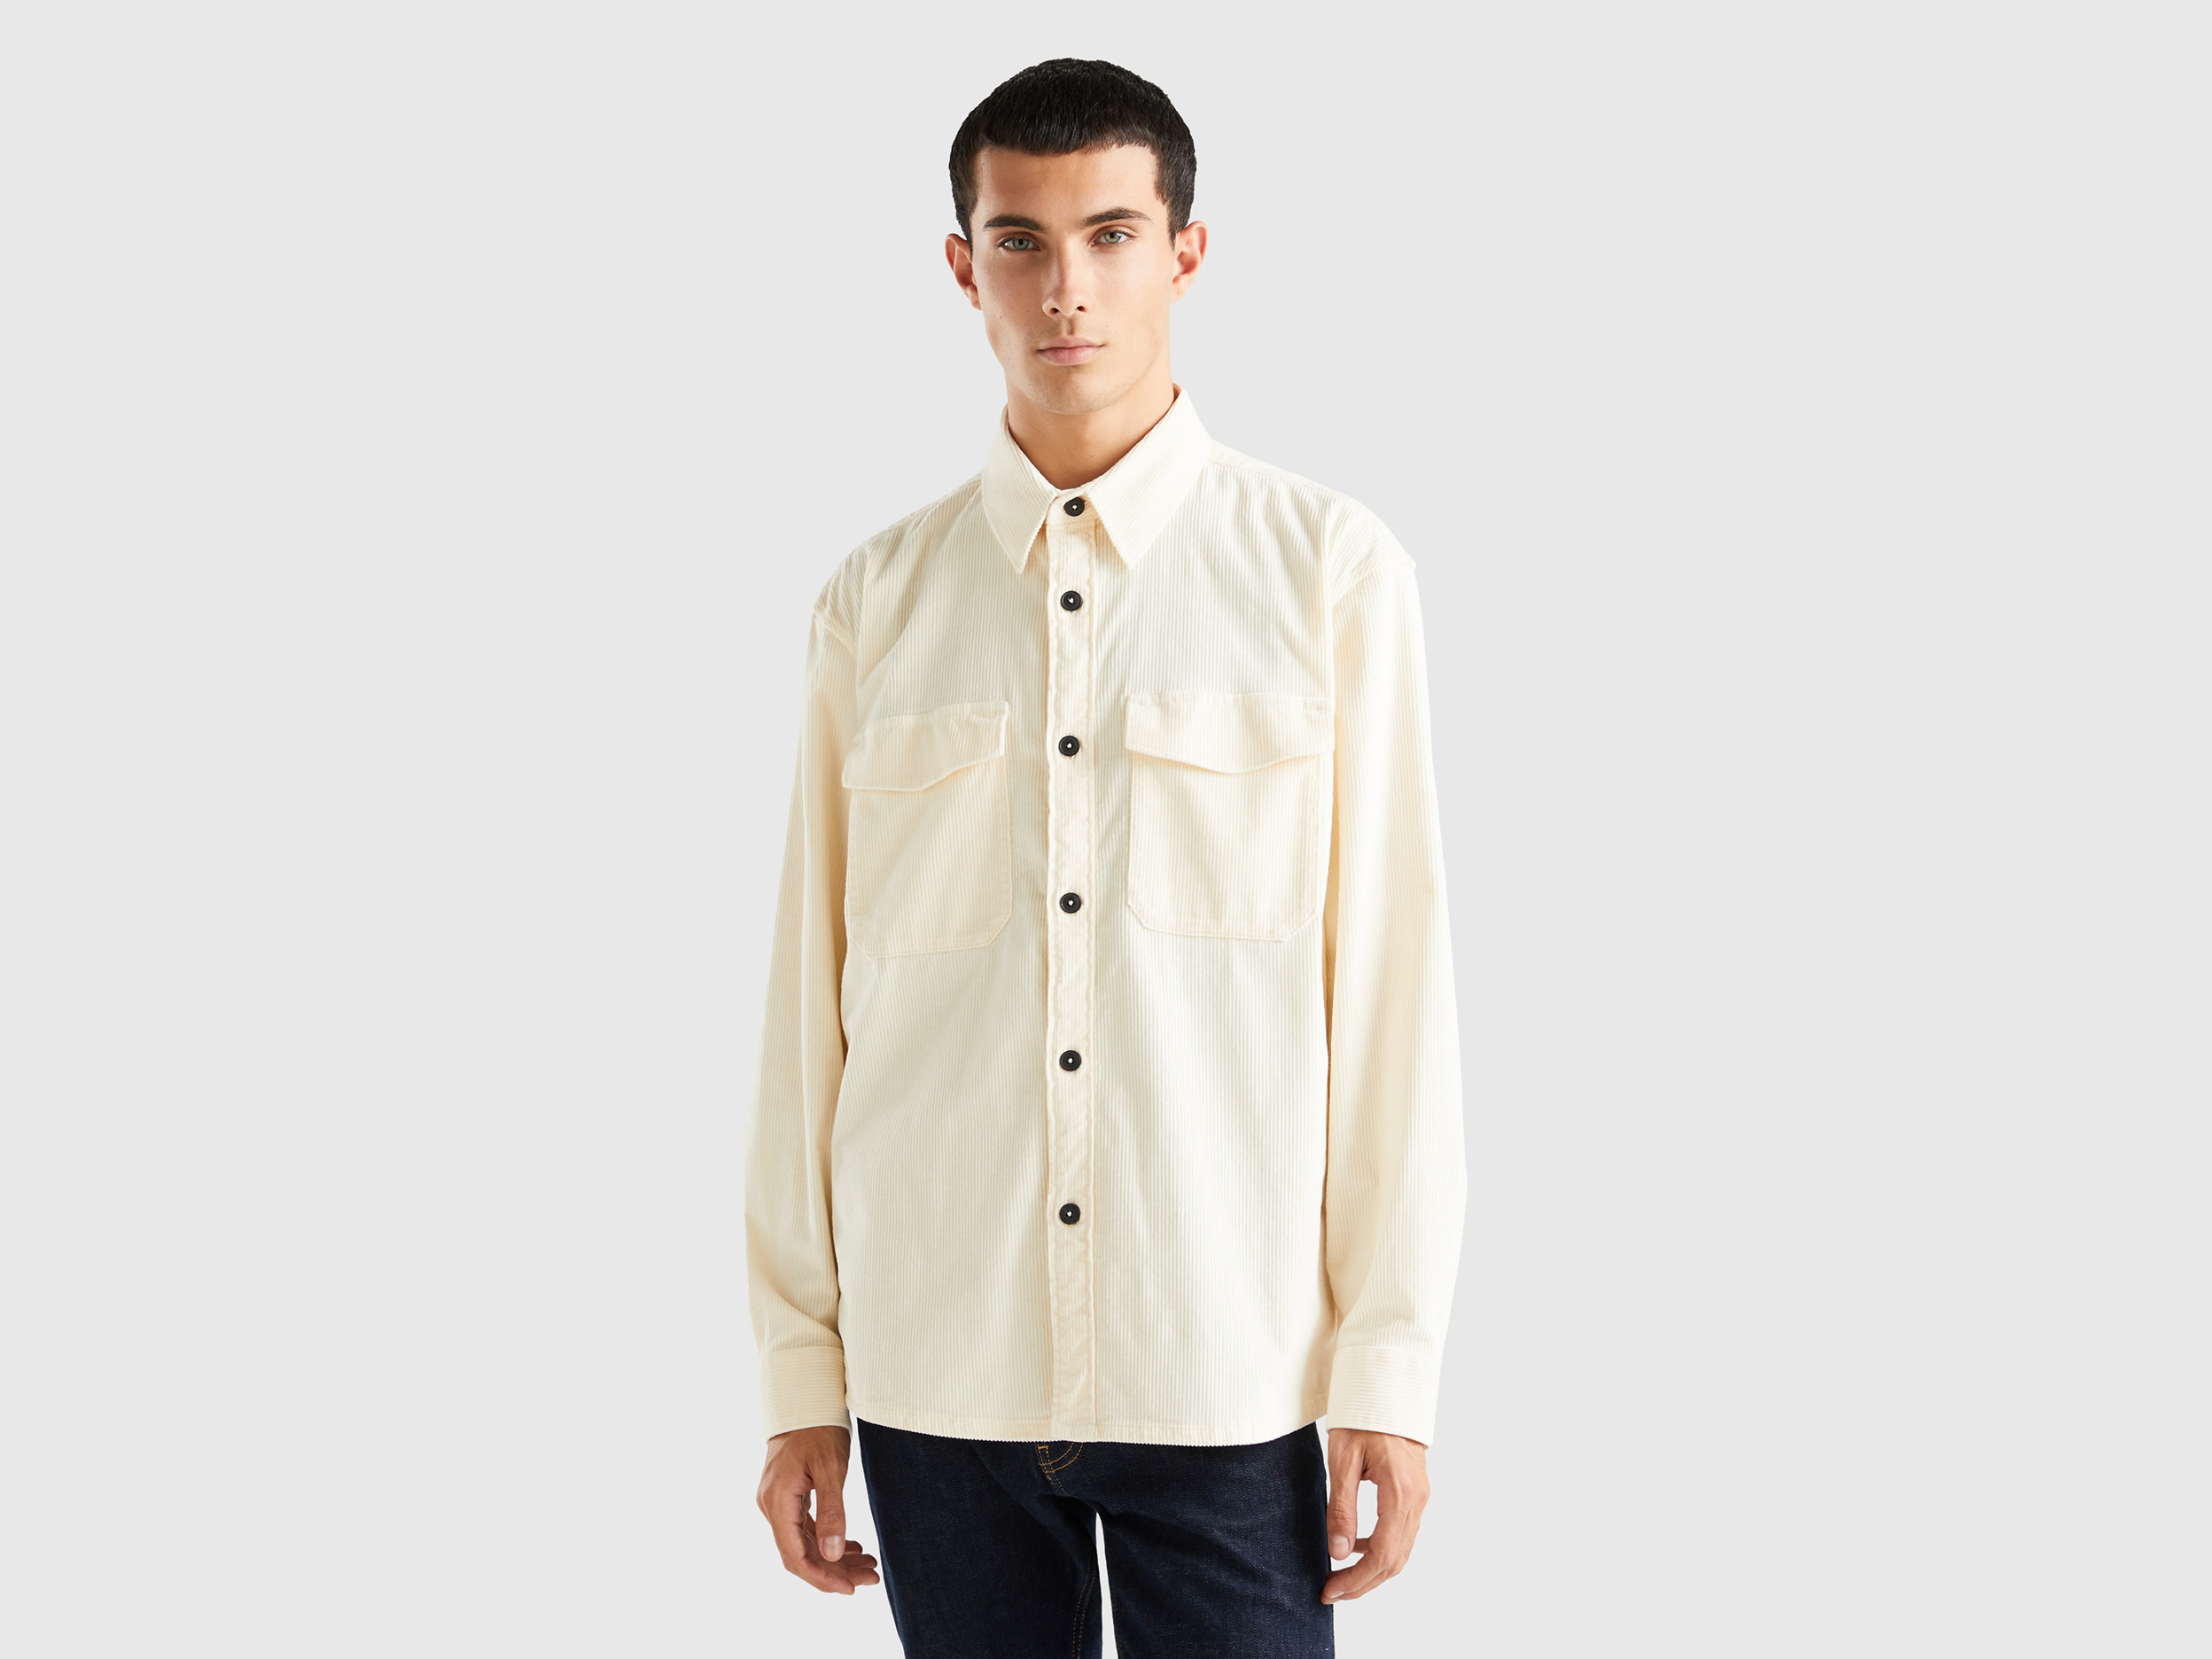 Benetton, Velvet Ribbed Shirt, size XXL, Creamy White, Men